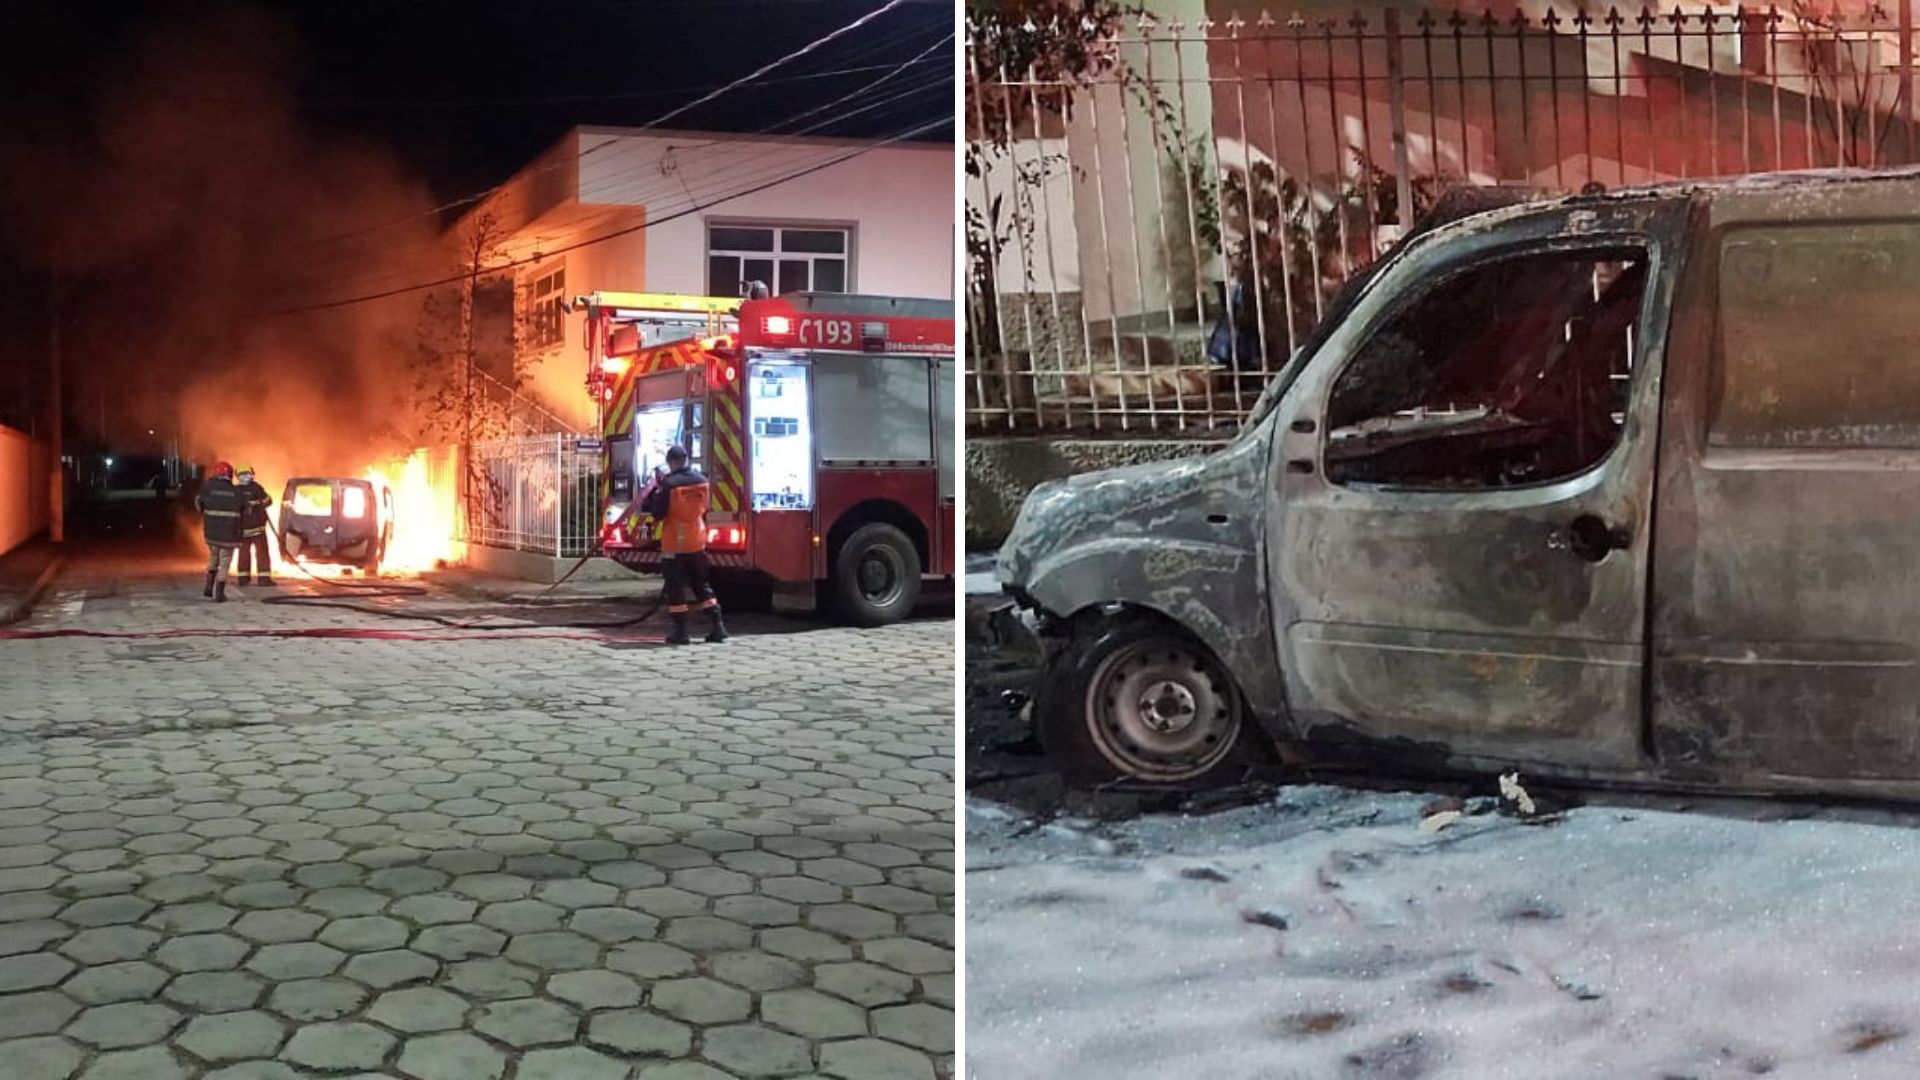 O Corpo de Bombeiros foi acionado e apagou as chamas, mas o veículo da Santa Casa de Guaçuí foi totalmente destruído